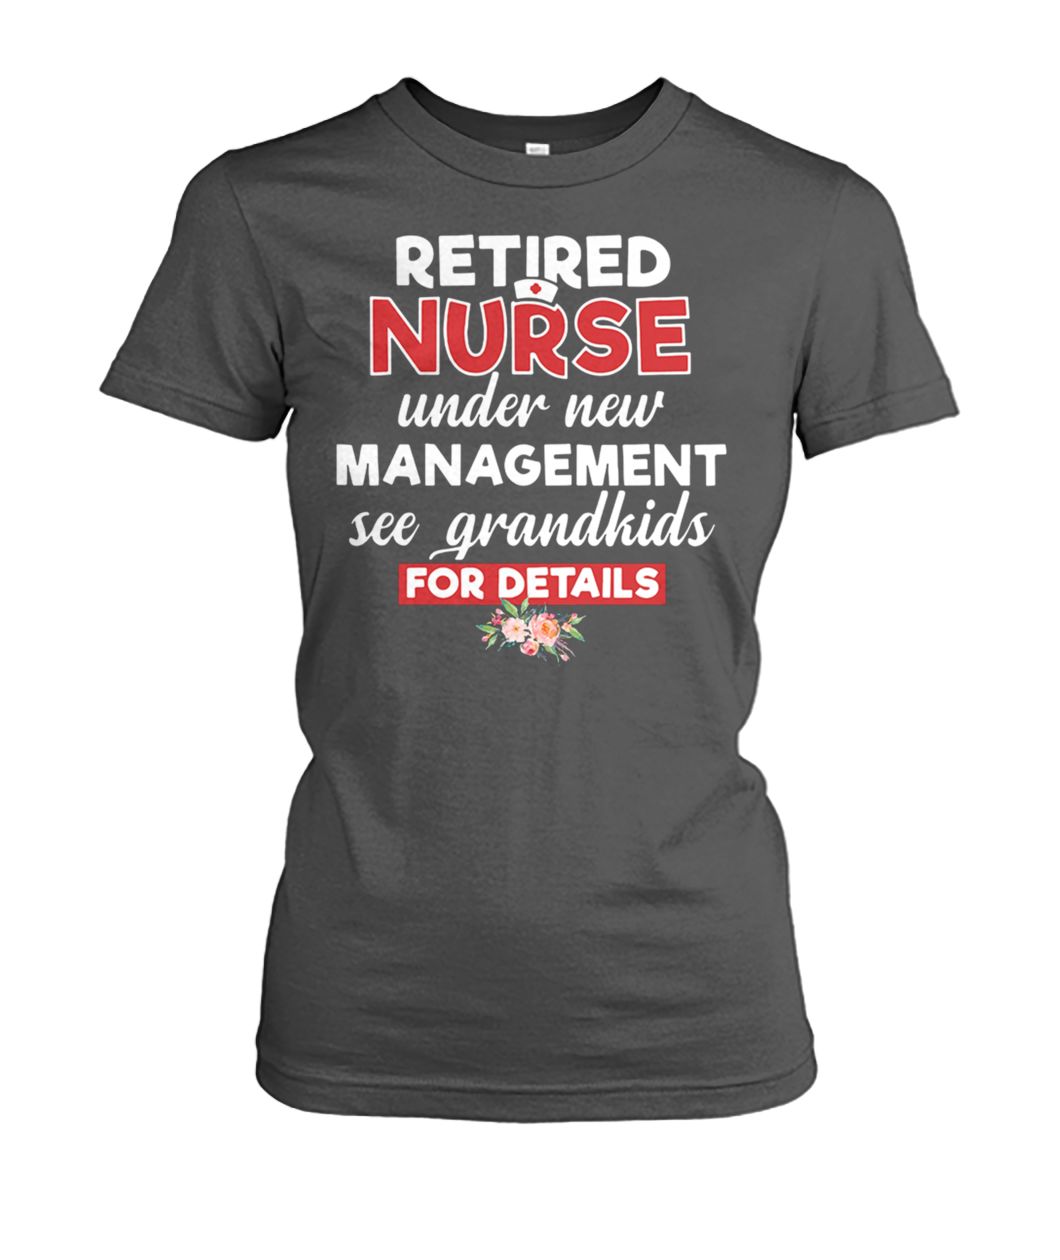 Retired nurse under new management see grandkids for details women's crew tee